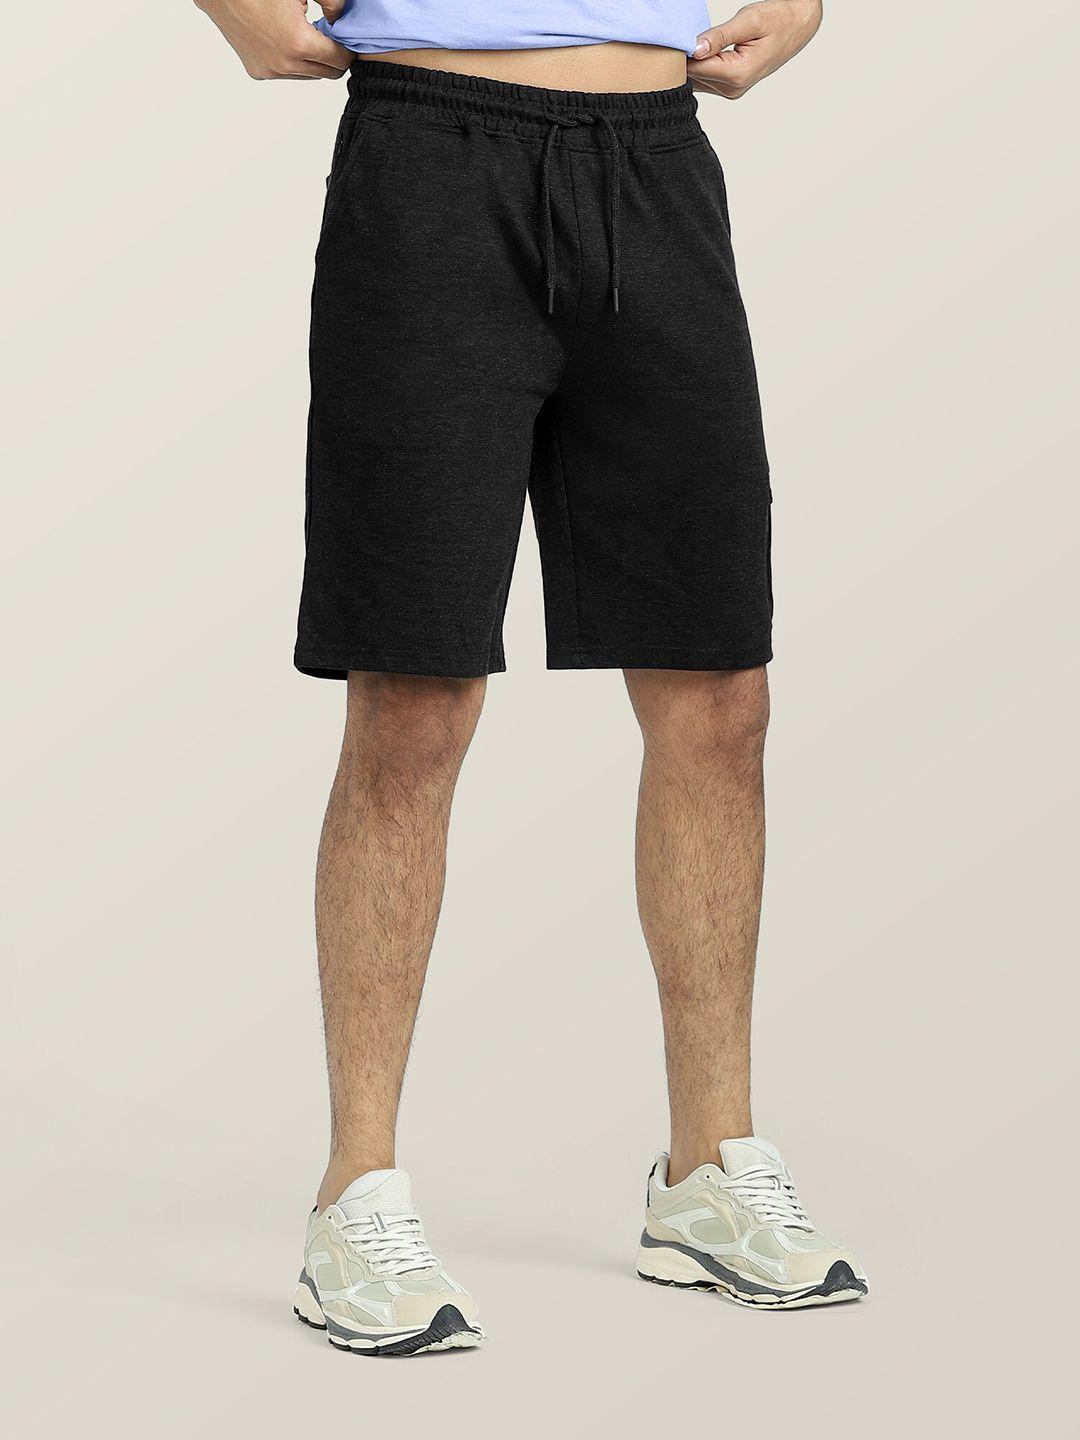 xyxx men cotton casual shorts